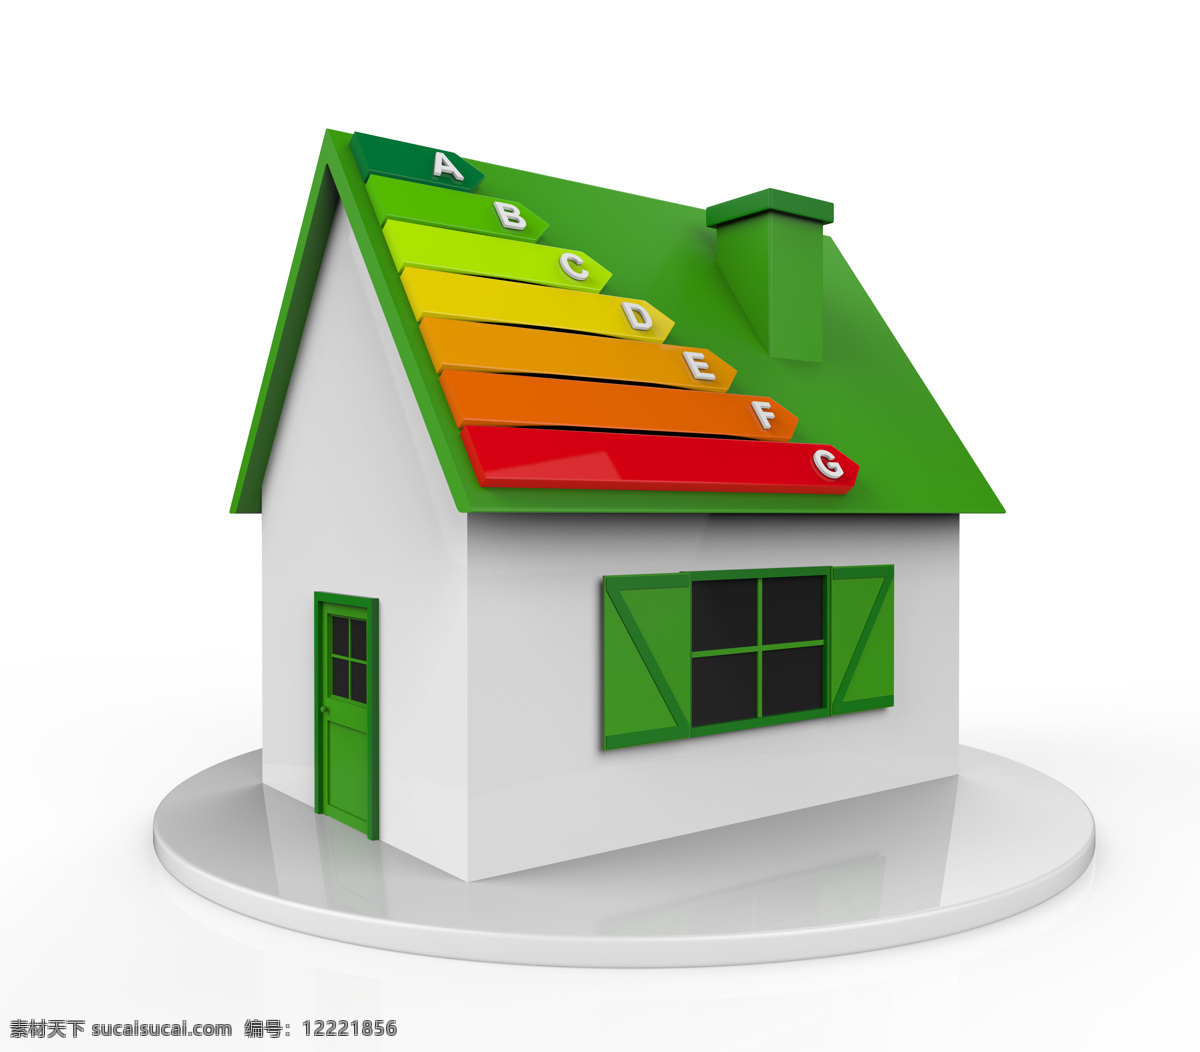 卡通 房子 模型 高清 房子模型图片 房子模型 3d立体 绿色